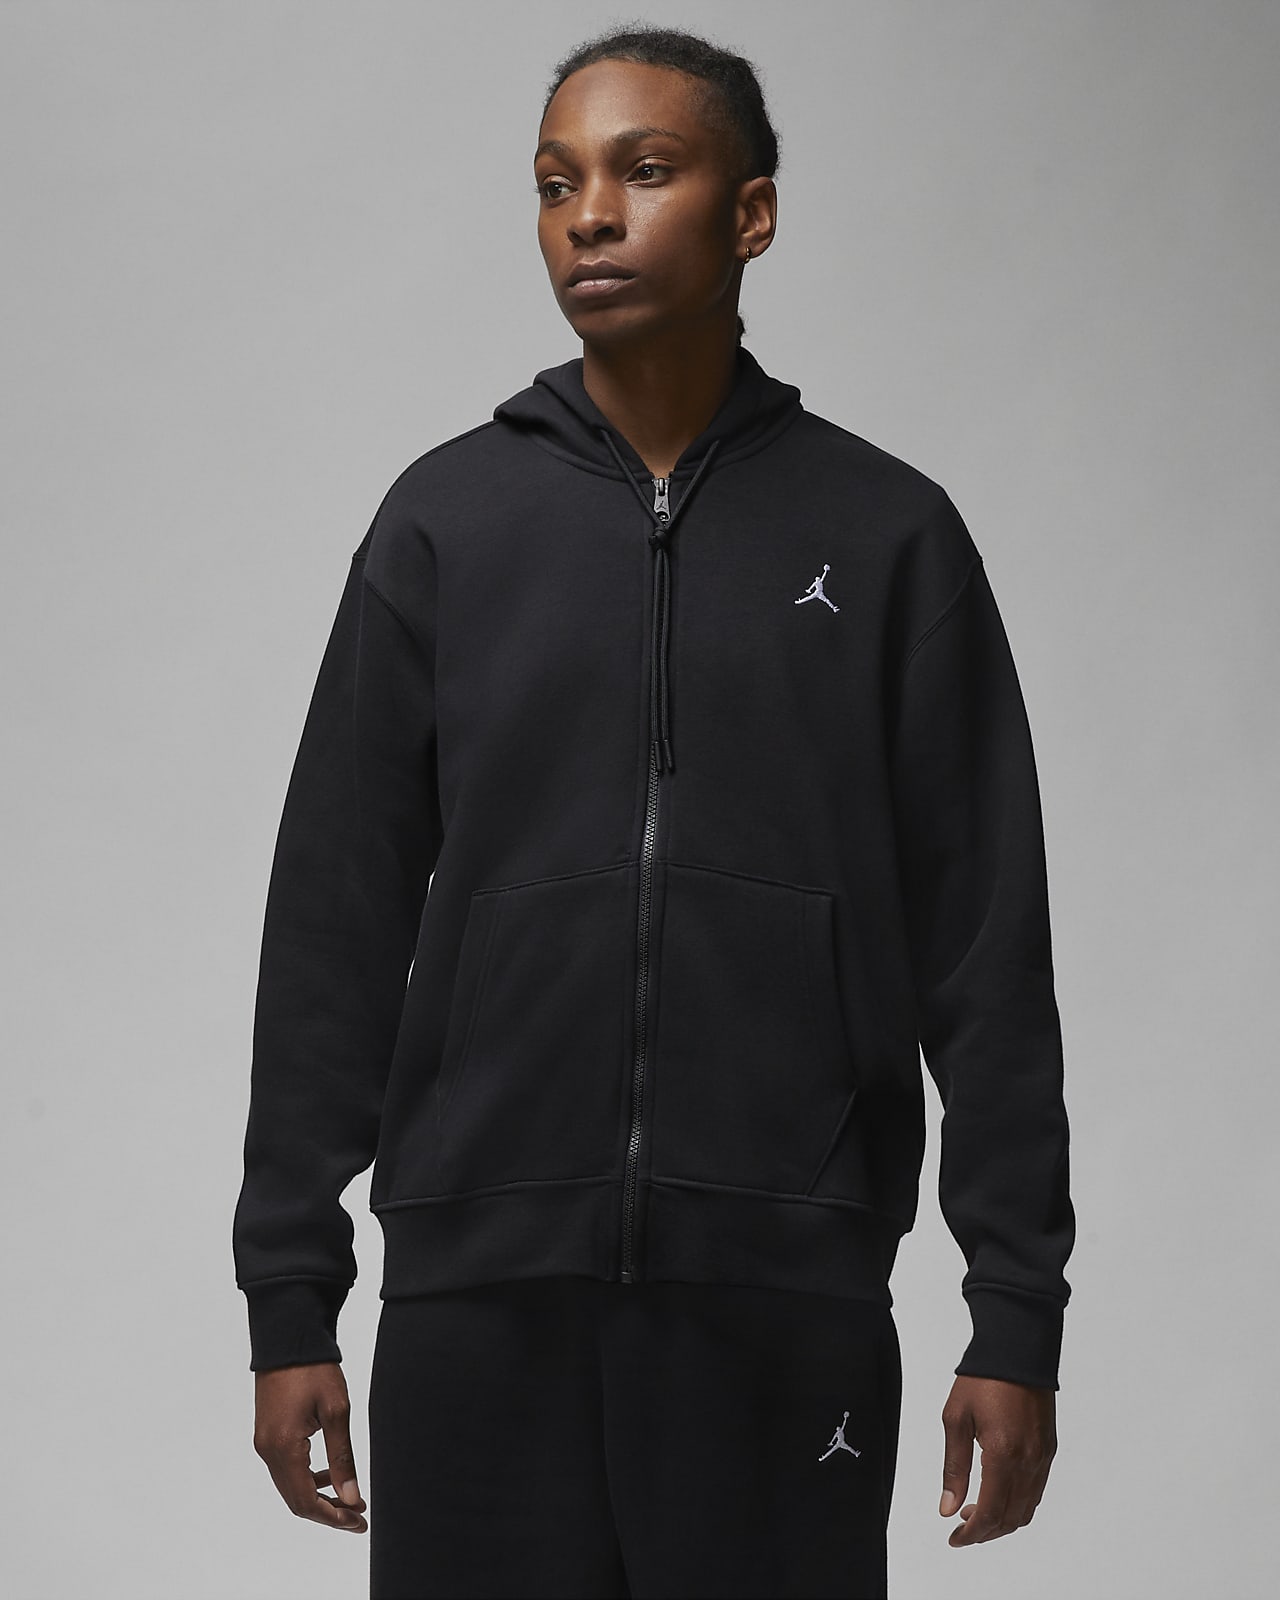 Betuttelen meesteres Messing Jordan Essentials Men's Full-Zip Fleece Hoodie. Nike.com